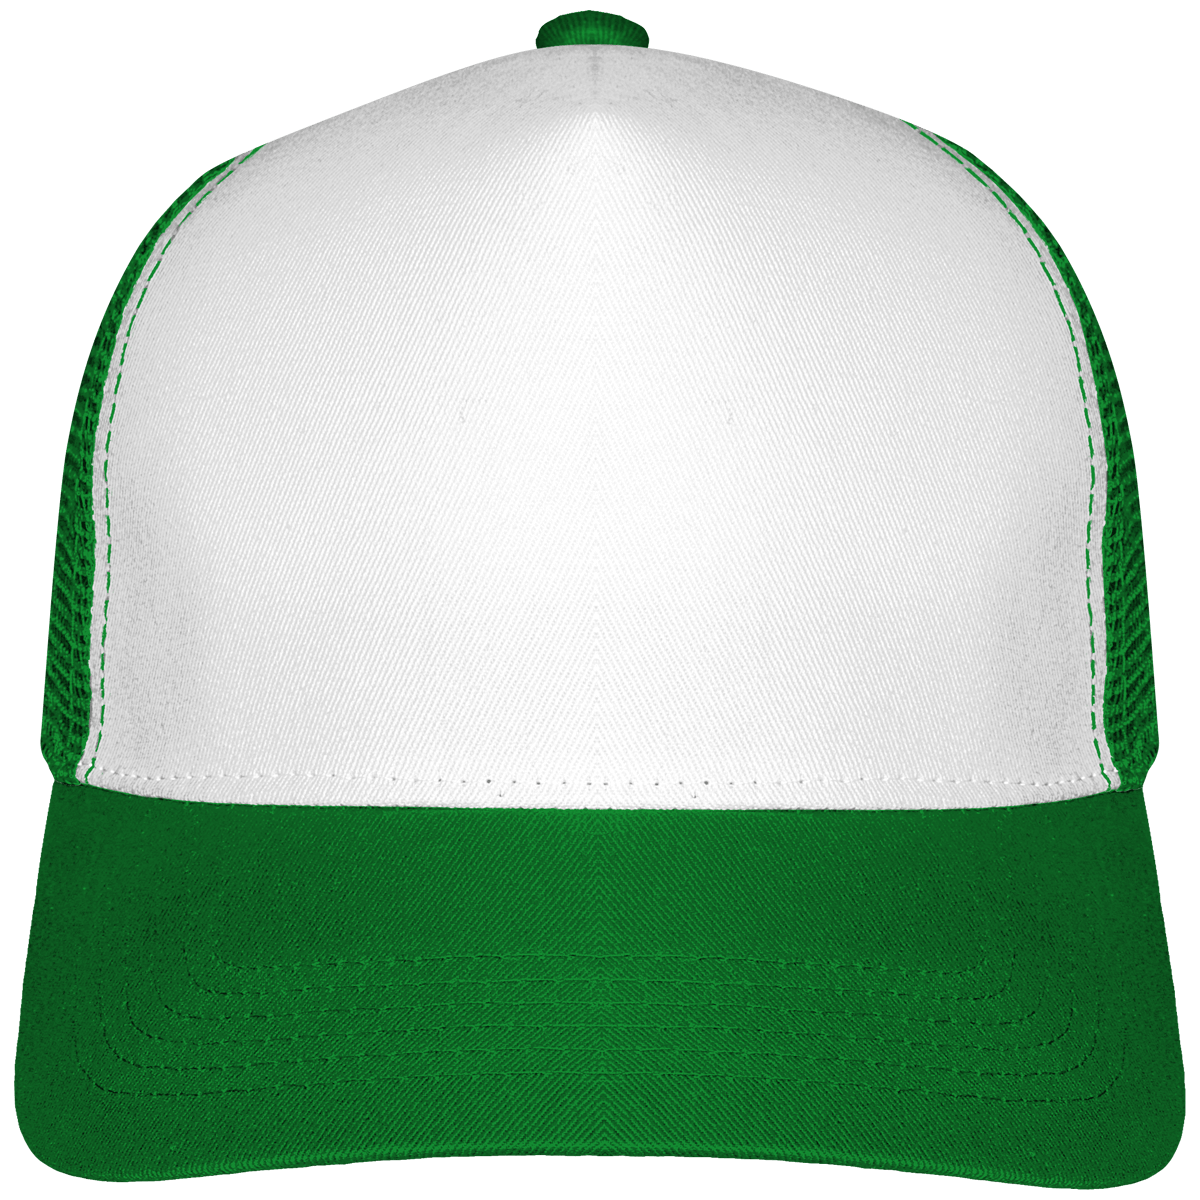 Customizable Half Mesh Trucker Caps 6 Mesh On Tunetoo Pure Green / White